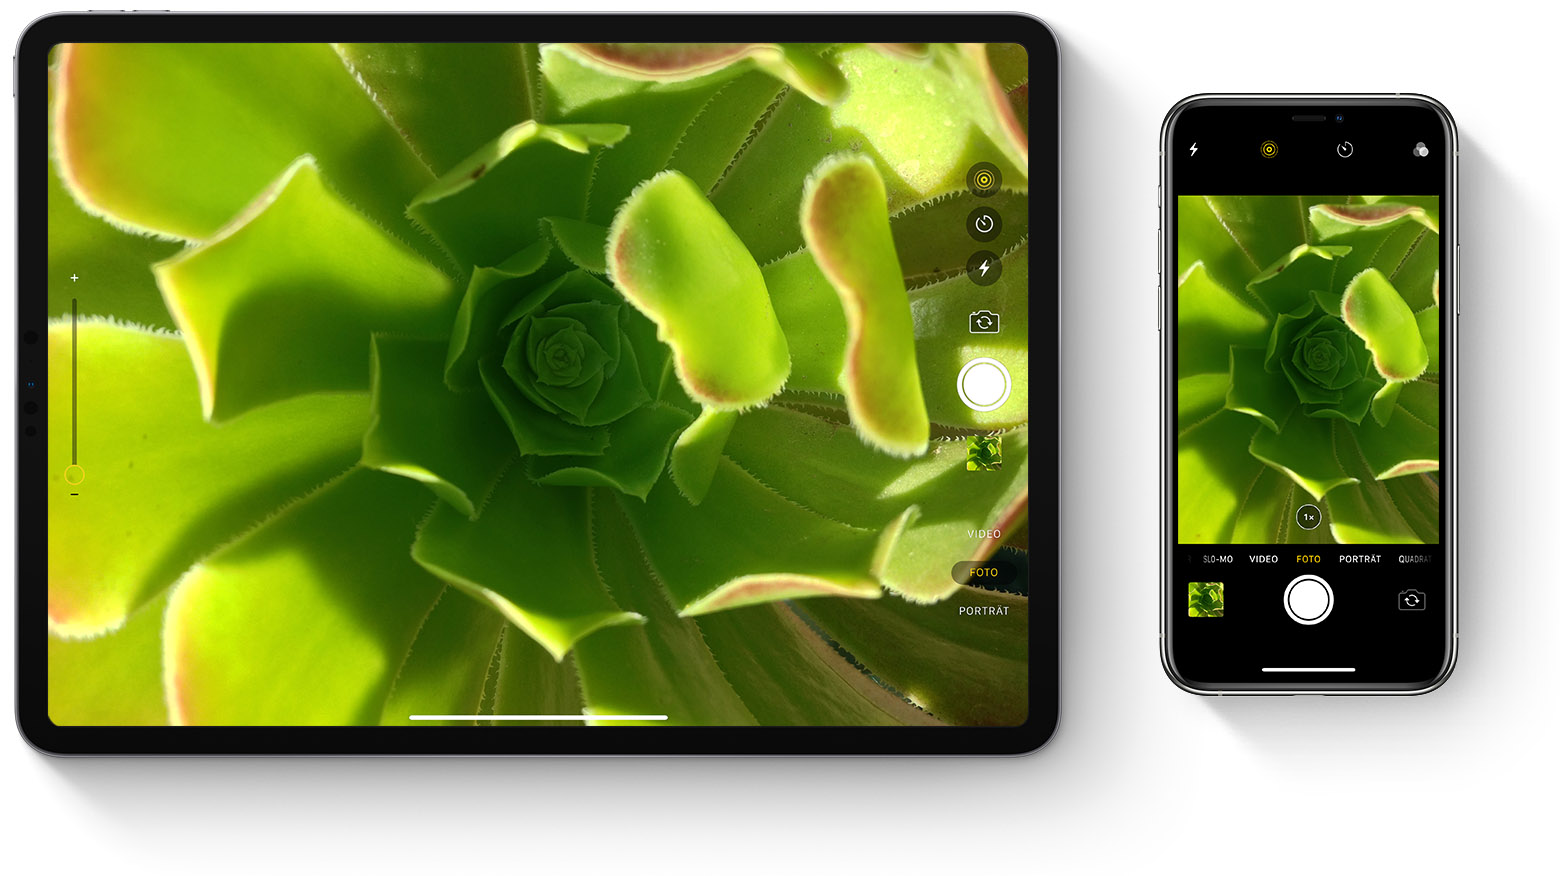 Fotos Mit Dem Iphone Ipad Und Ipod Touch Aufnehmen Und Bearbeiten Apple Support